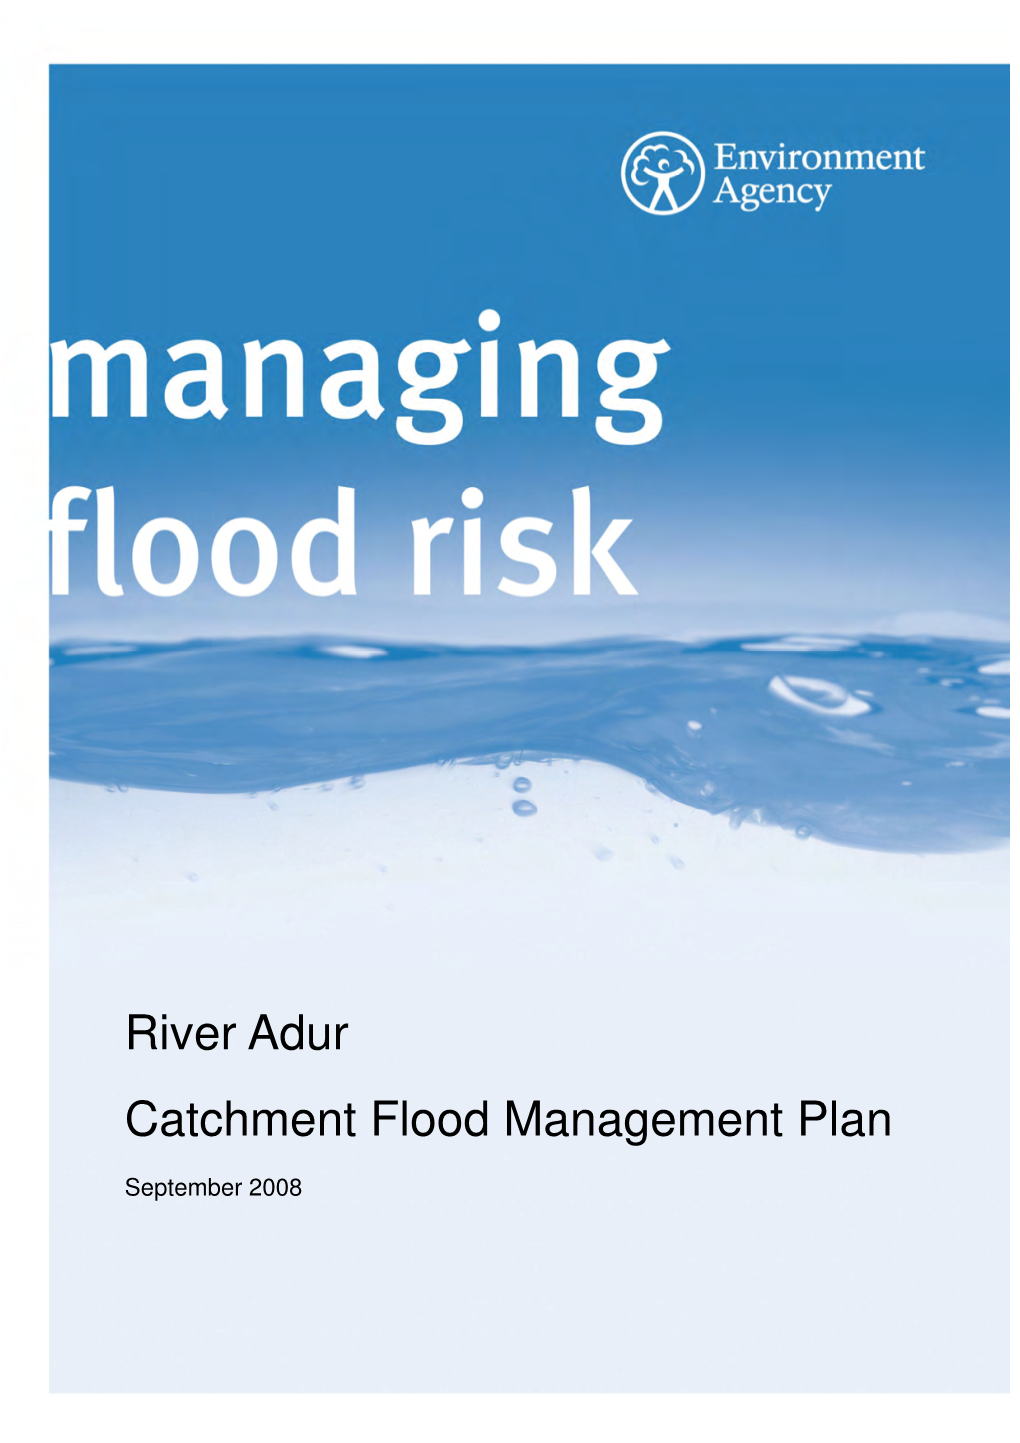 River Adur Catchment Flood Management Plan